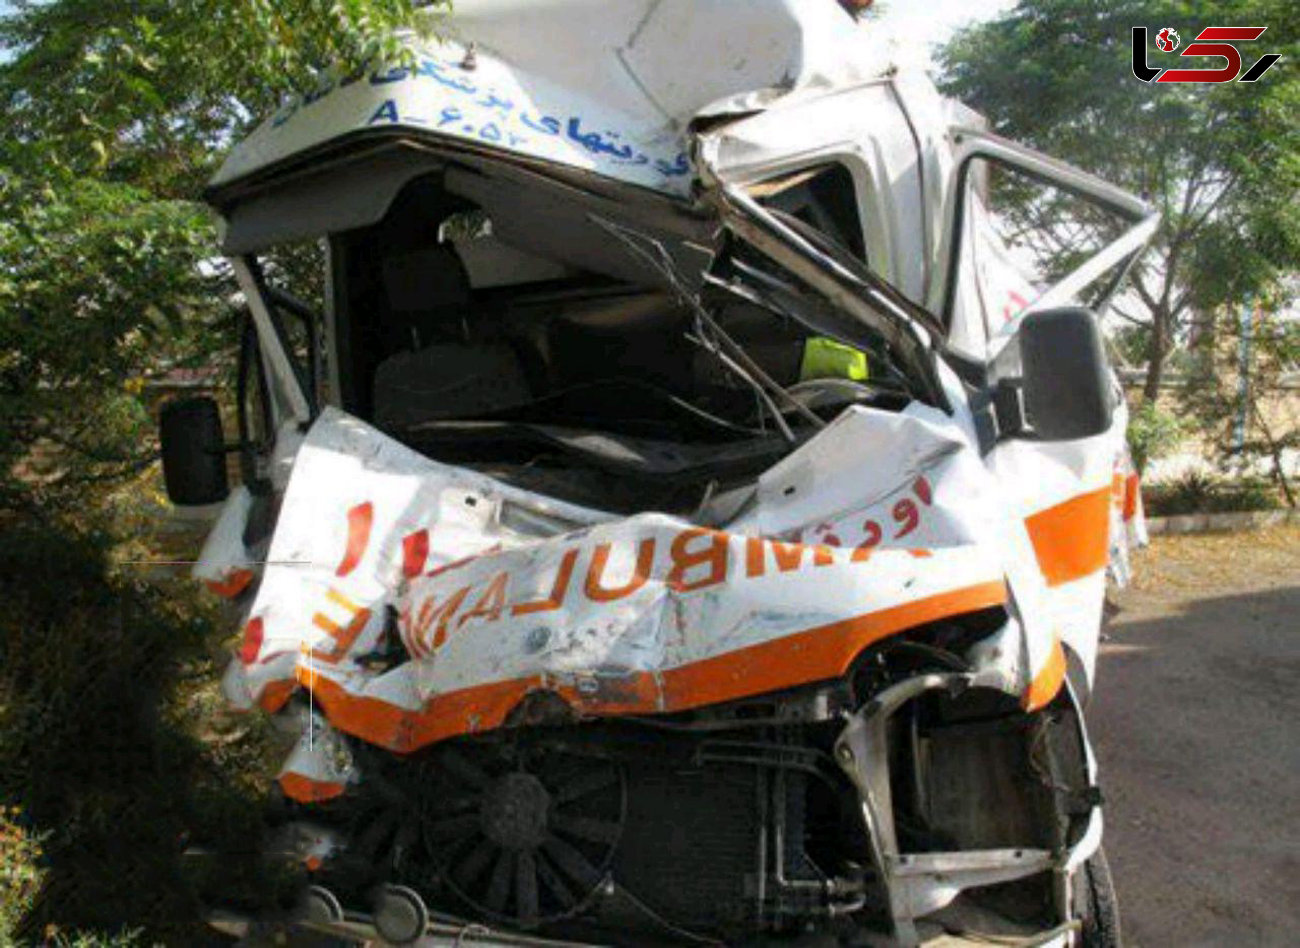 اسامی قربانیان حادثه واژگونی آمبولانس در آزادراه قزوین اعلام شد / بیمار زن، پرستار و راننده هر سه جان سپردند + عکس